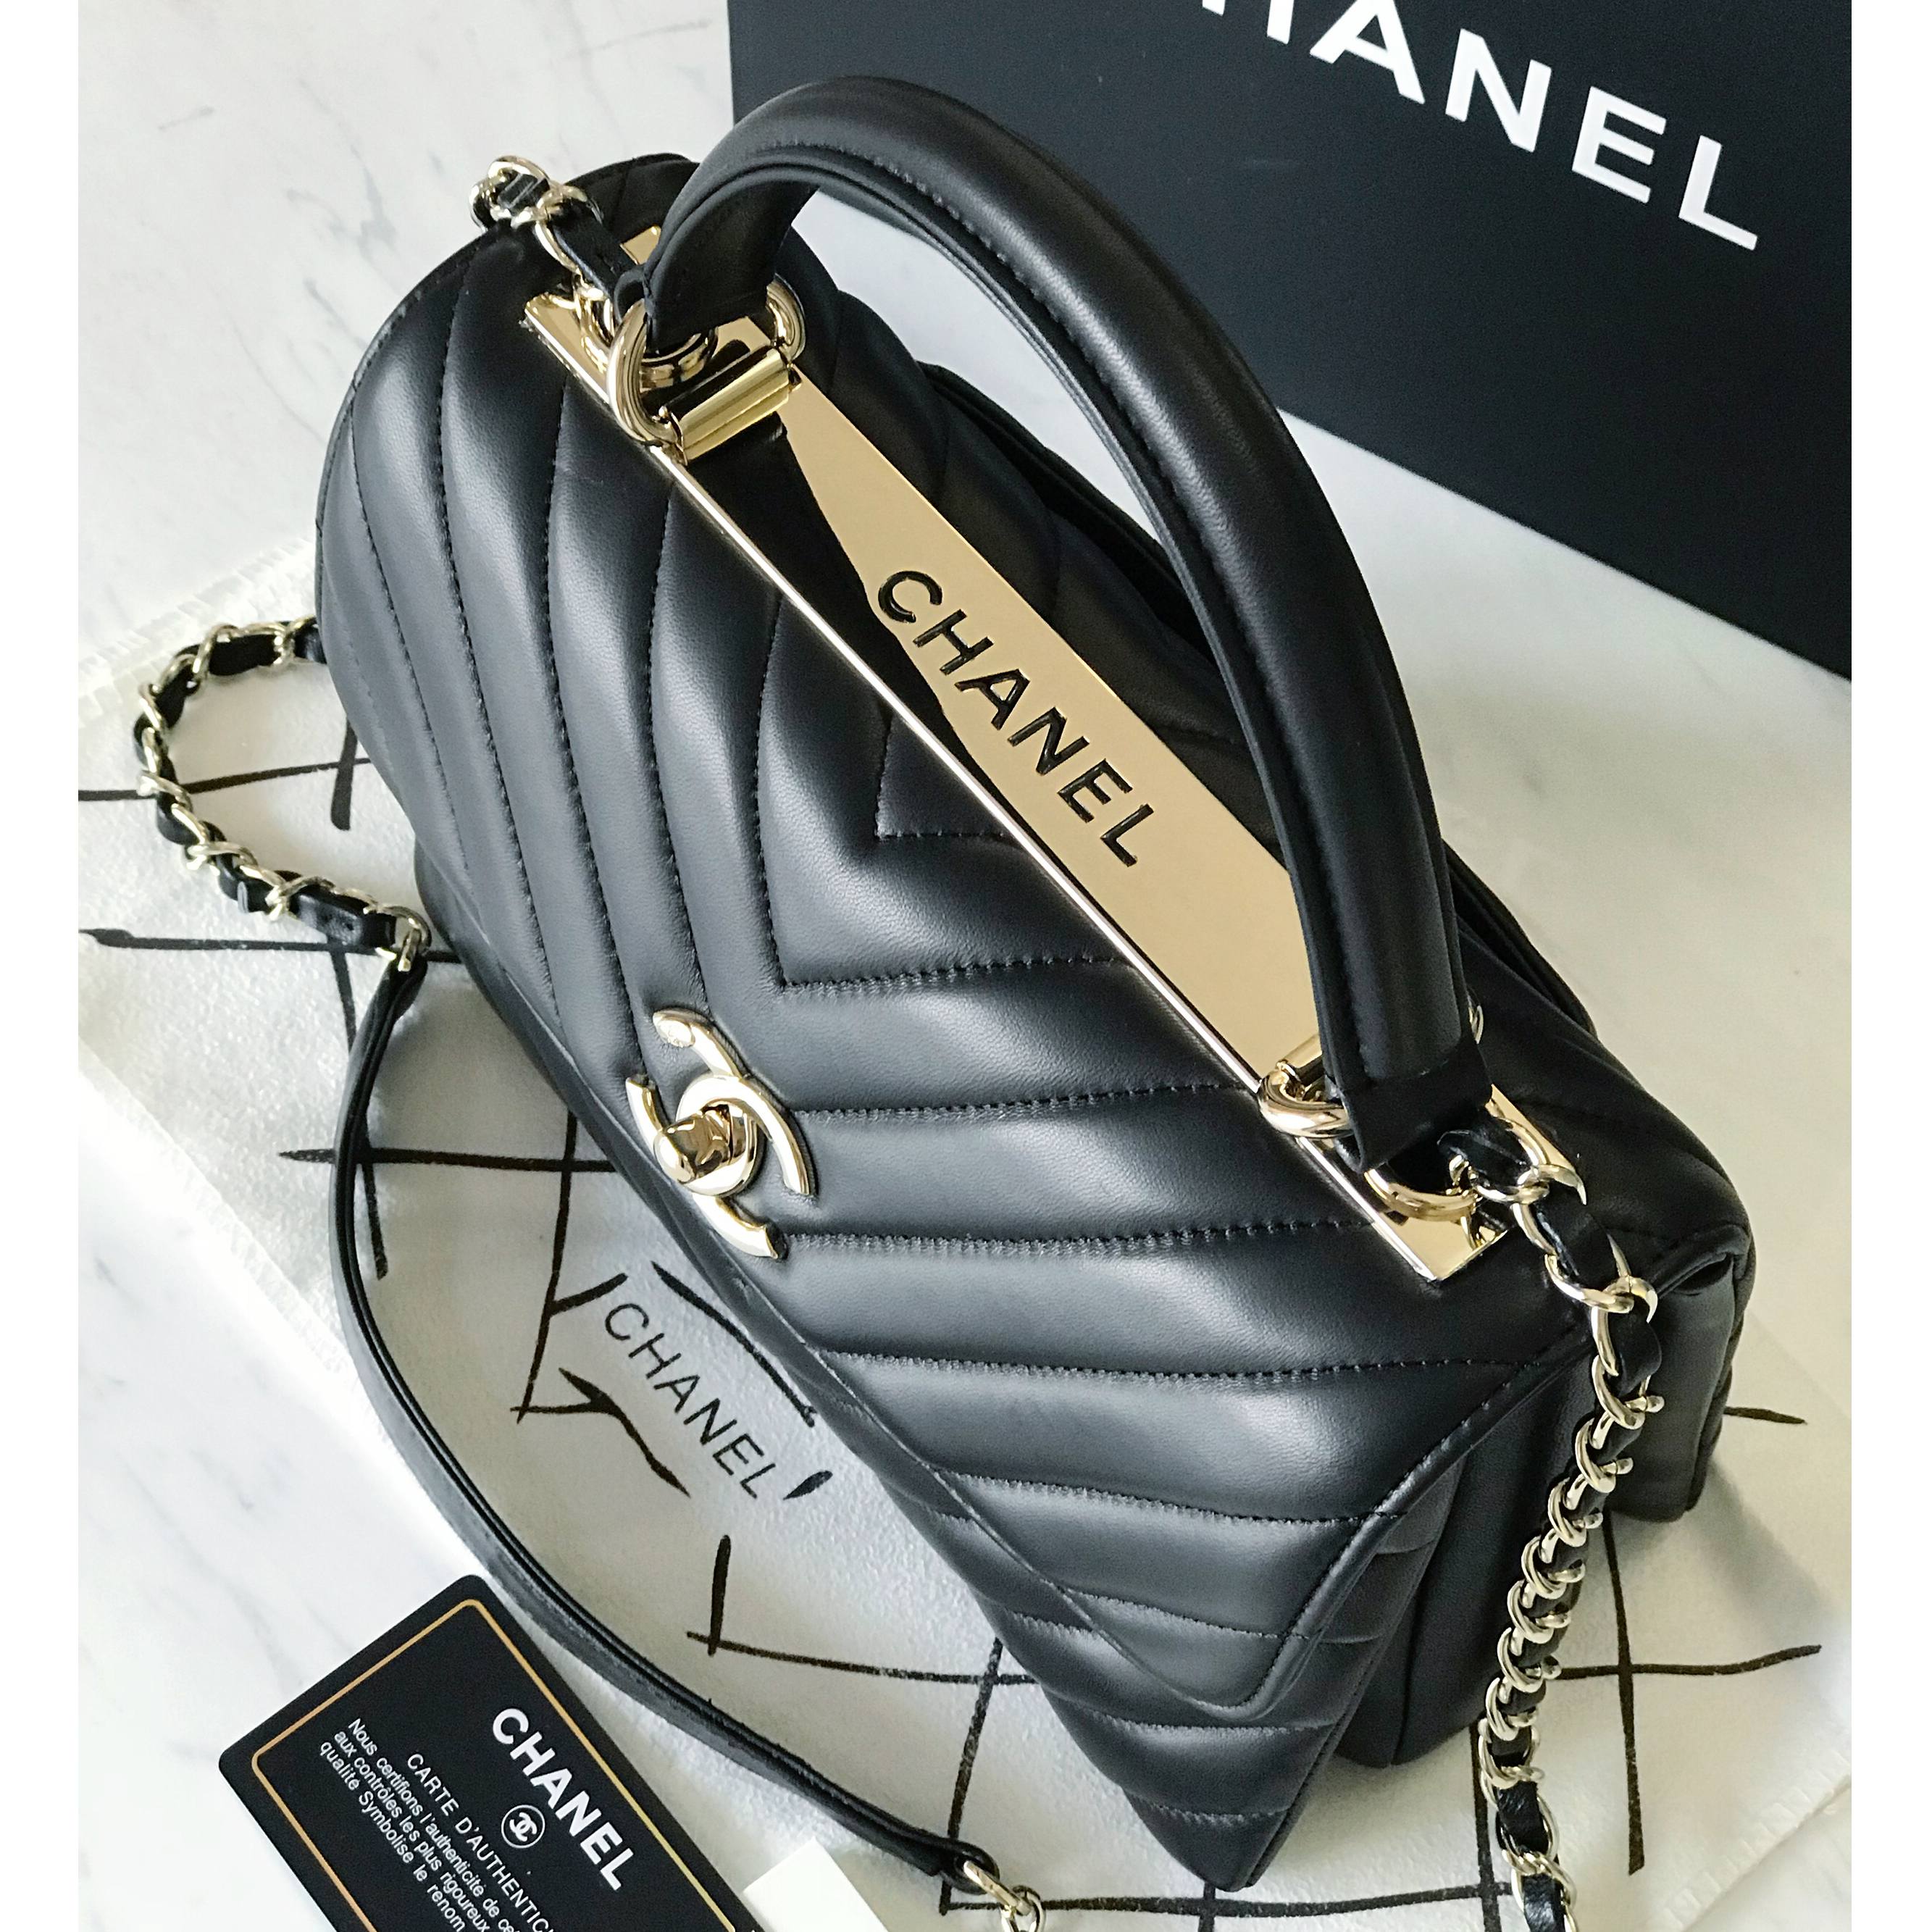 Chanel Famous Handbags | IQS Executive